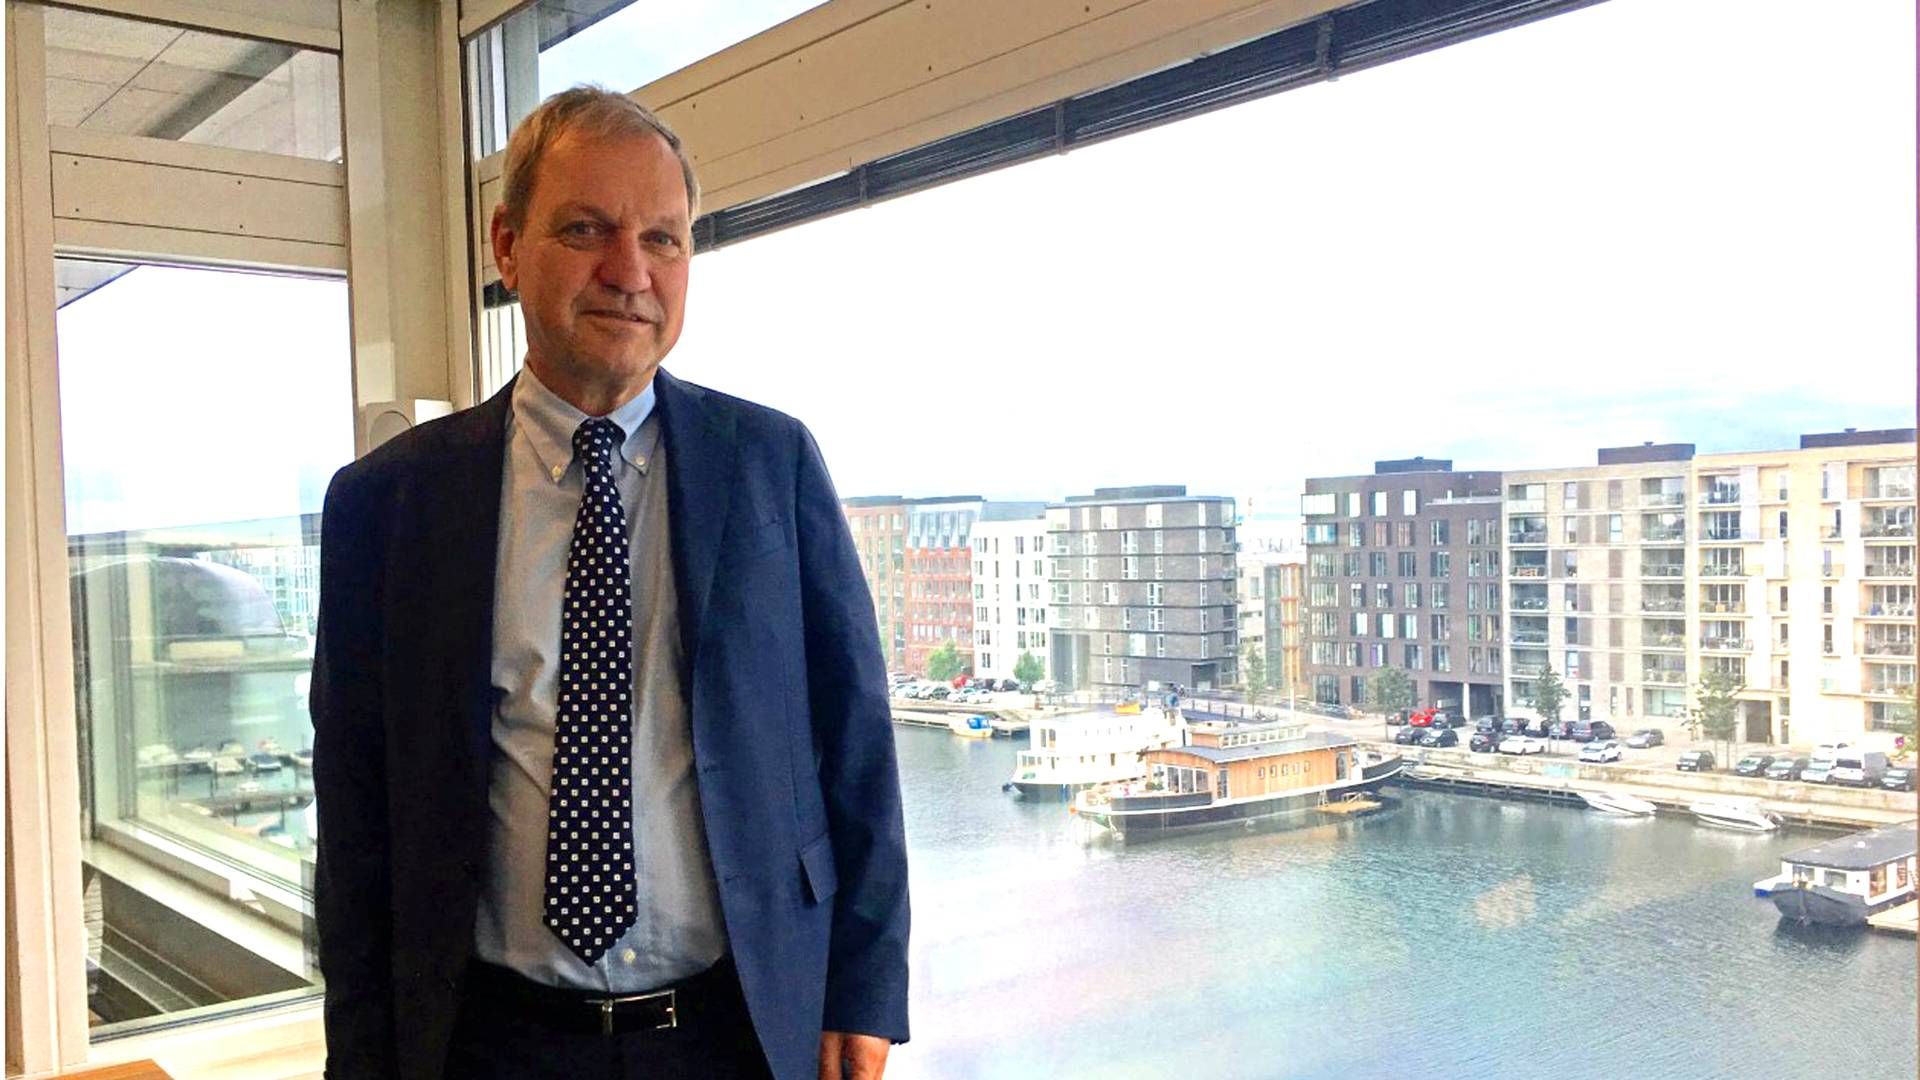 Lars Thuesens svenske charterselskab, Novair, kan være på vej mod en afvikling. | Foto: Daniel Hedelund